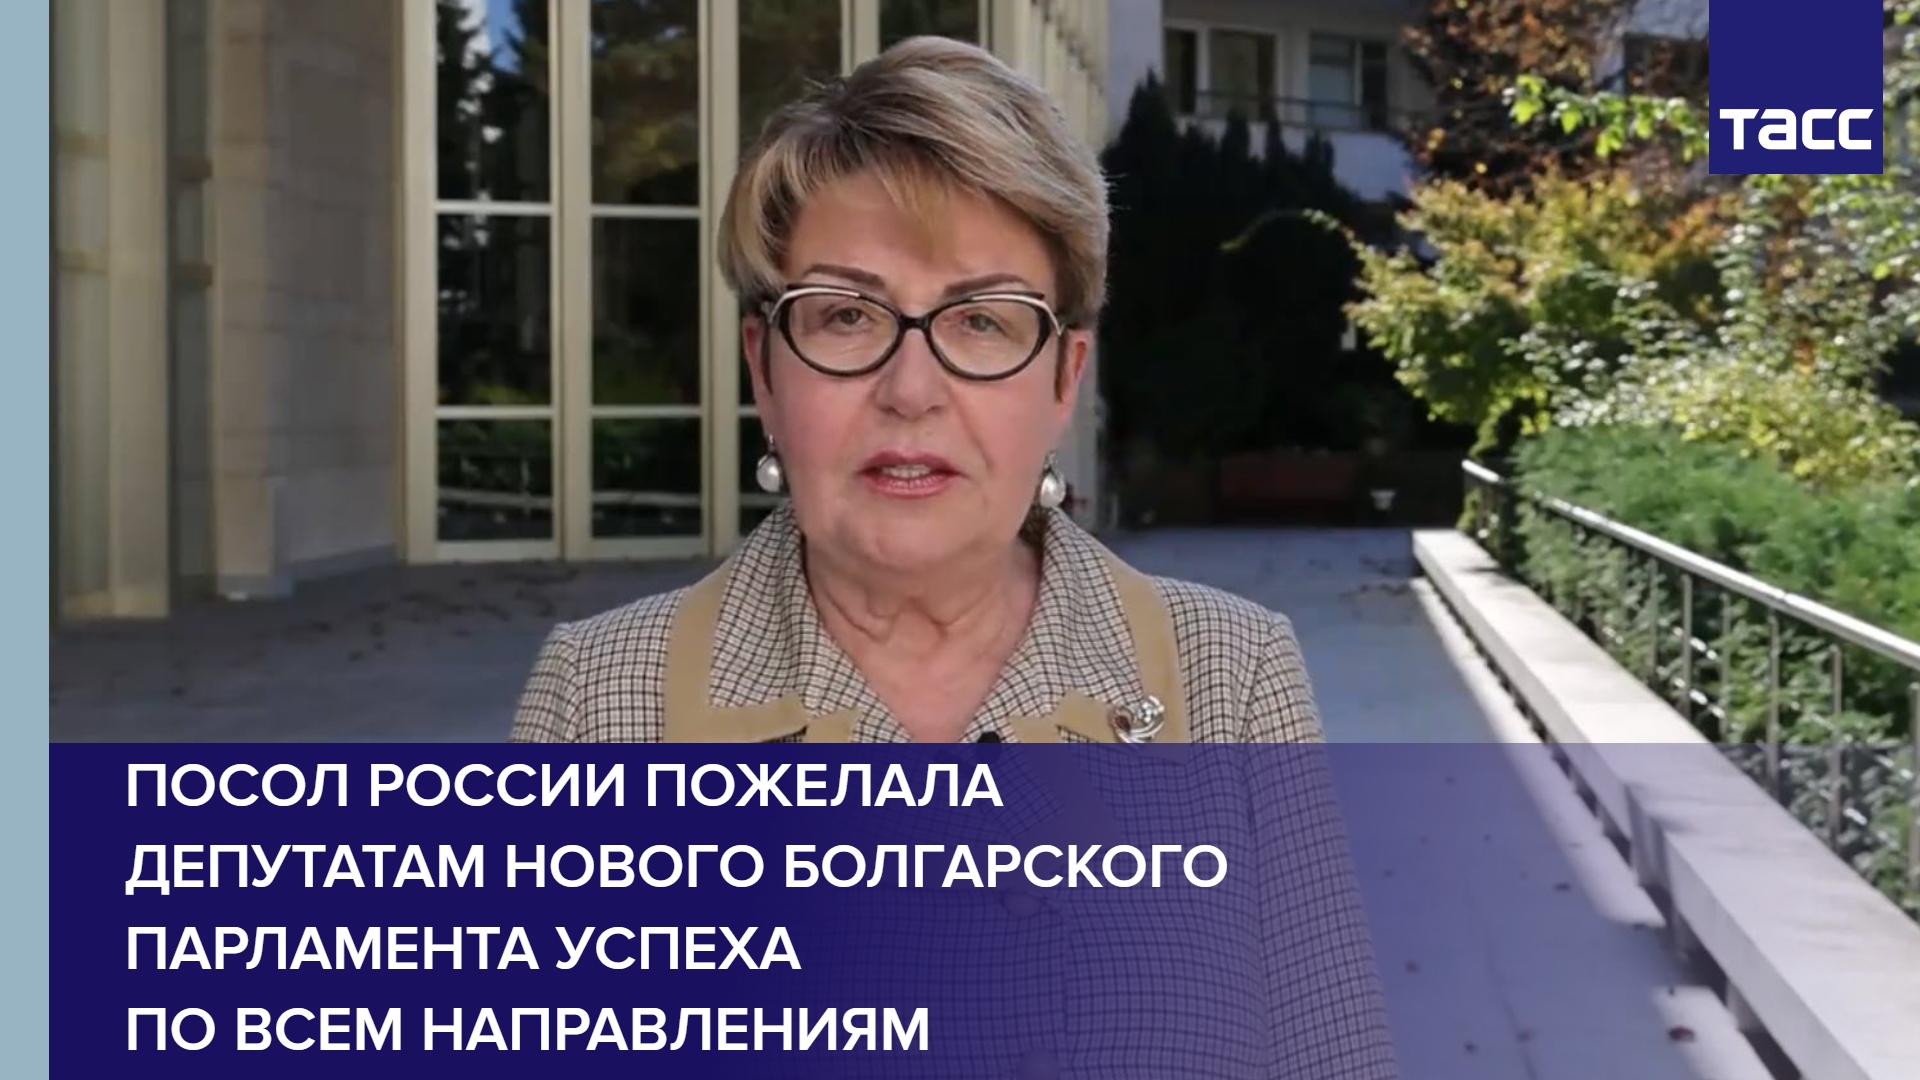 Посол России пожелала депутатам нового болгарского парламента успеха по всем направлениям